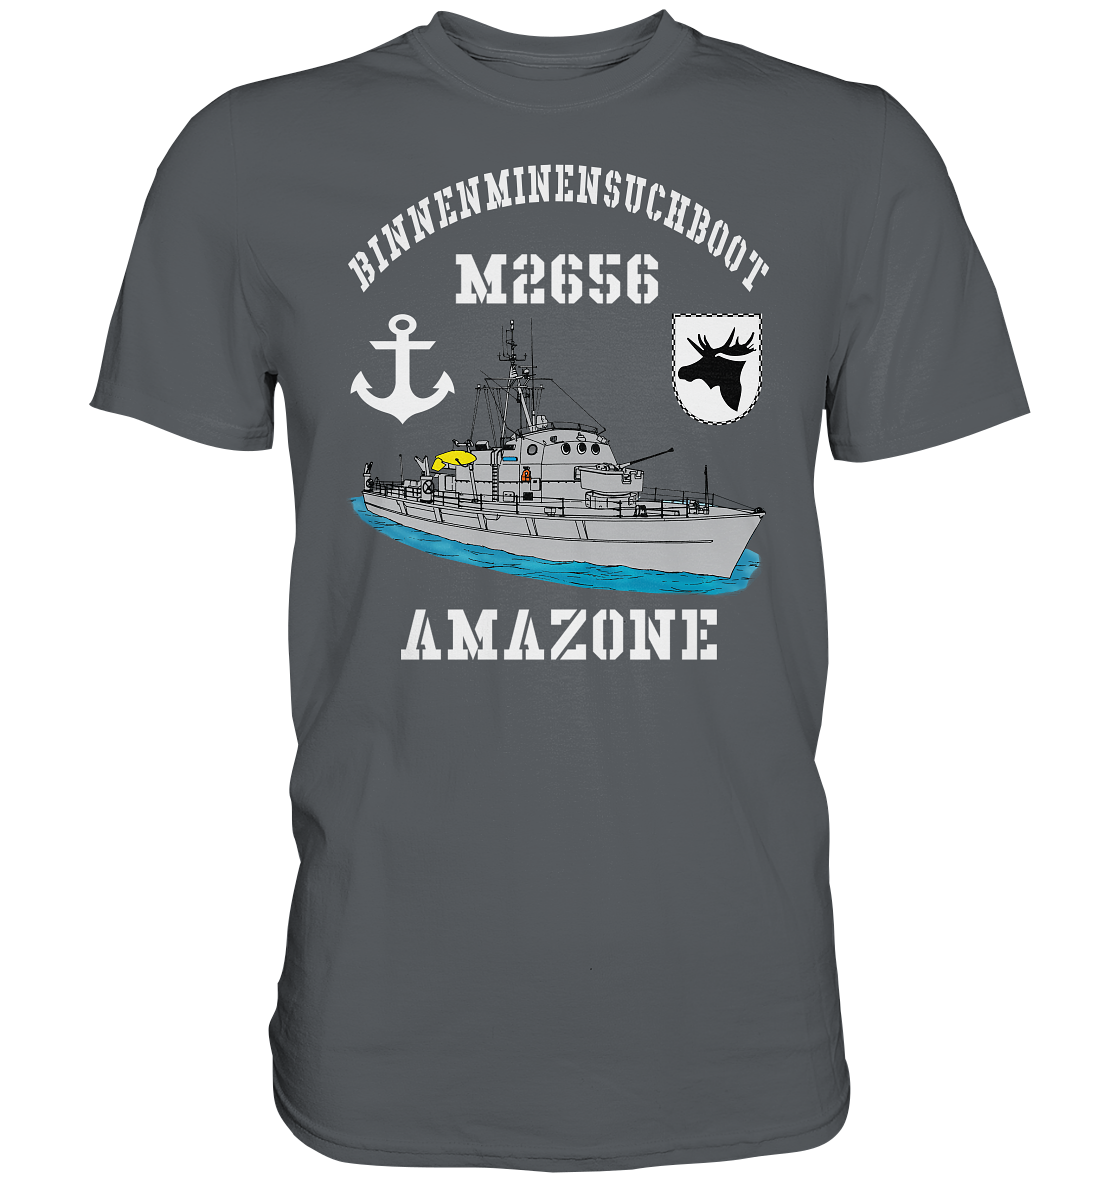 BIMI M2656 AMAZONE 3.MSG Anker - Premium Shirt